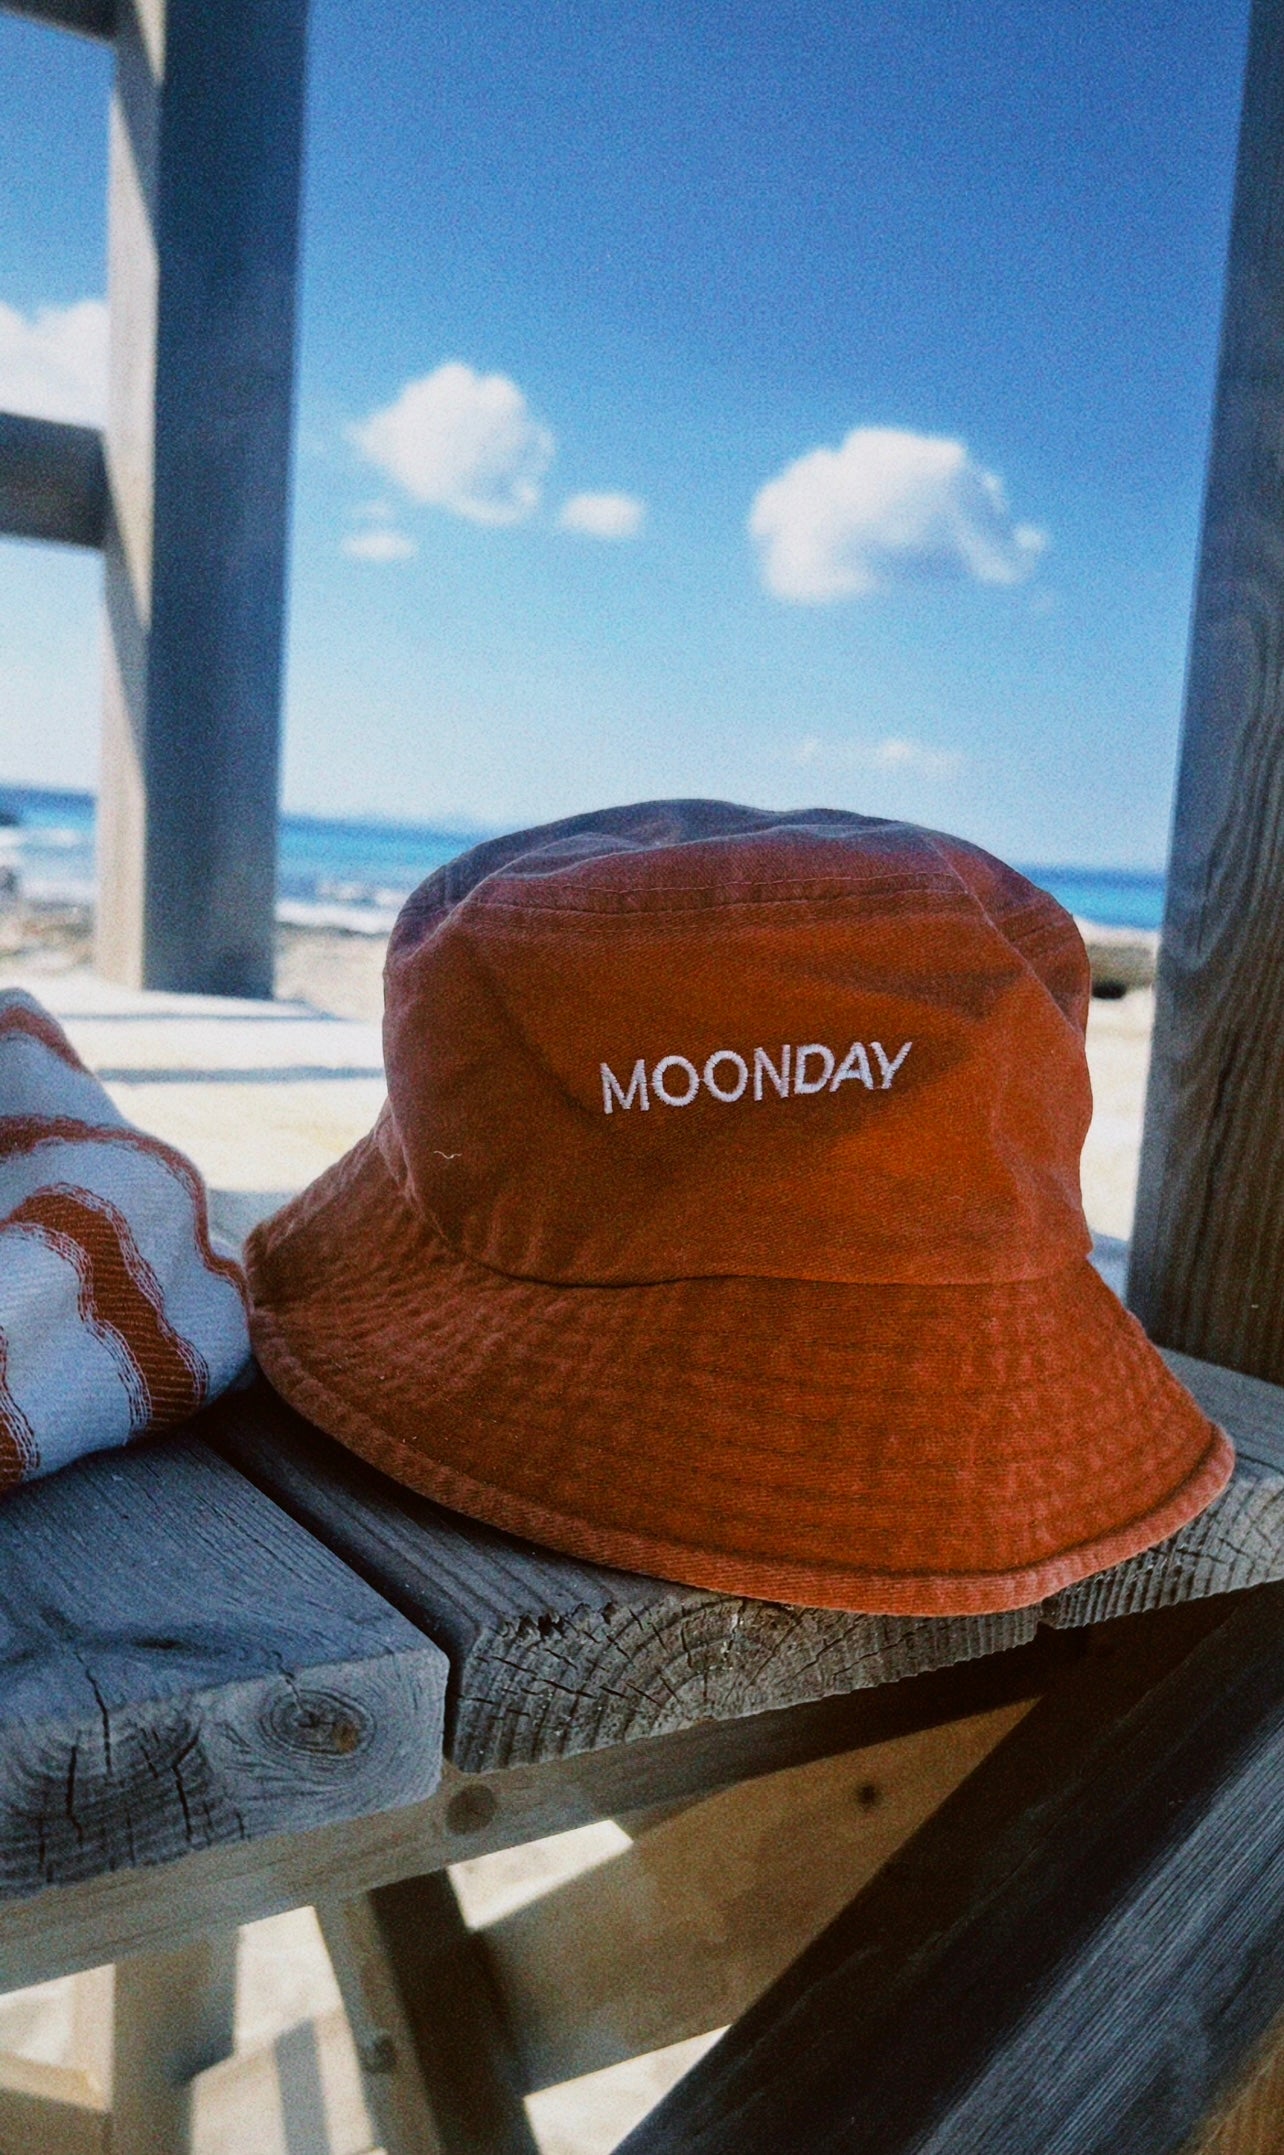 Bucket Moonday